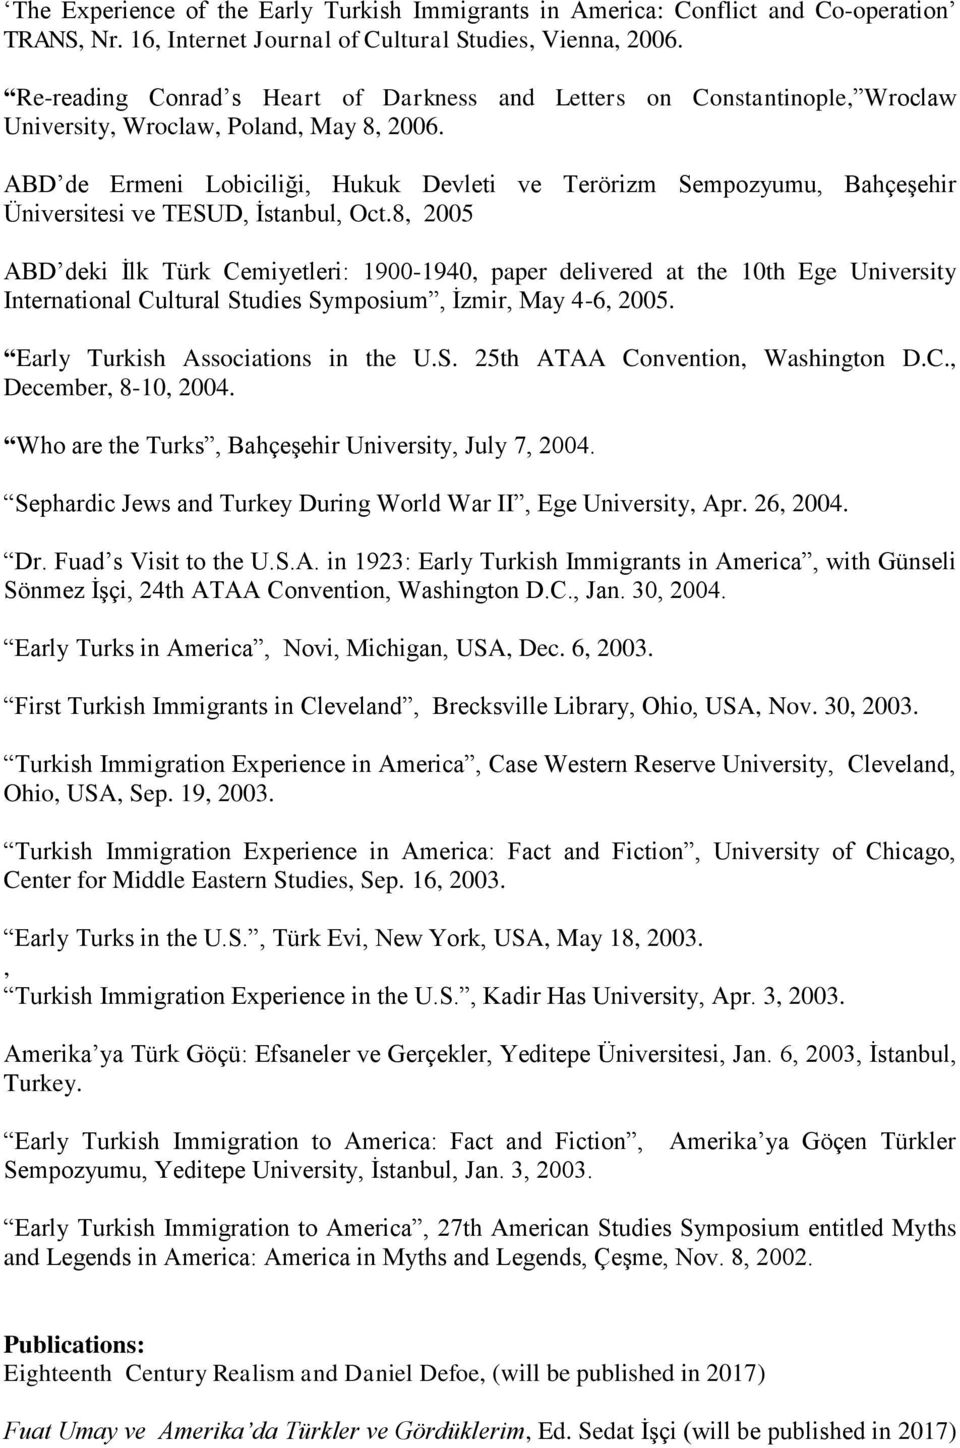 ABD de Ermeni Lobiciliği, Hukuk Devleti ve Terörizm Sempozyumu, Bahçeşehir Üniversitesi ve TESUD, İstanbul, Oct.